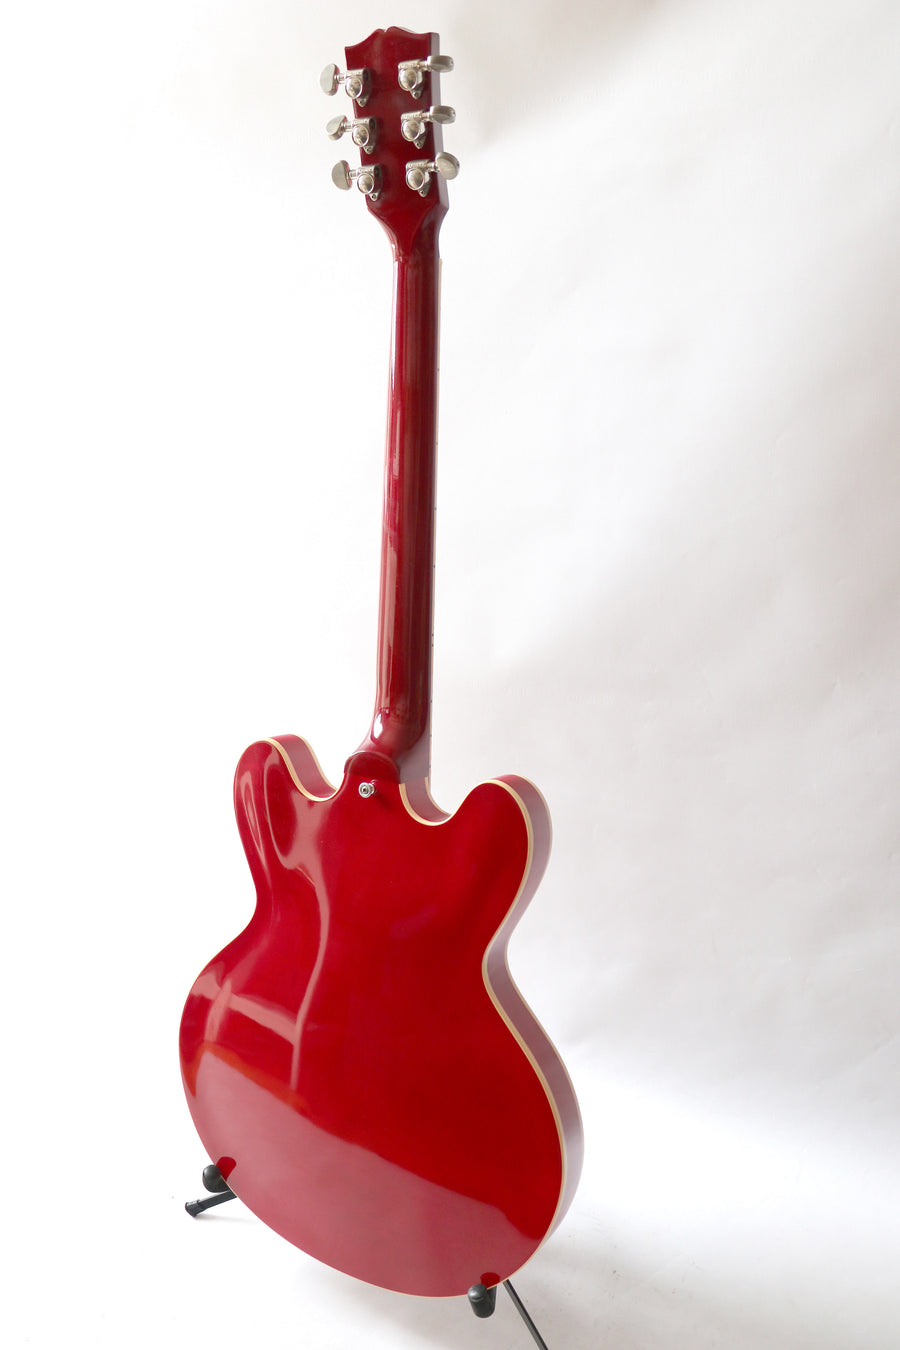 Gibson ES-335 2002 Cherry